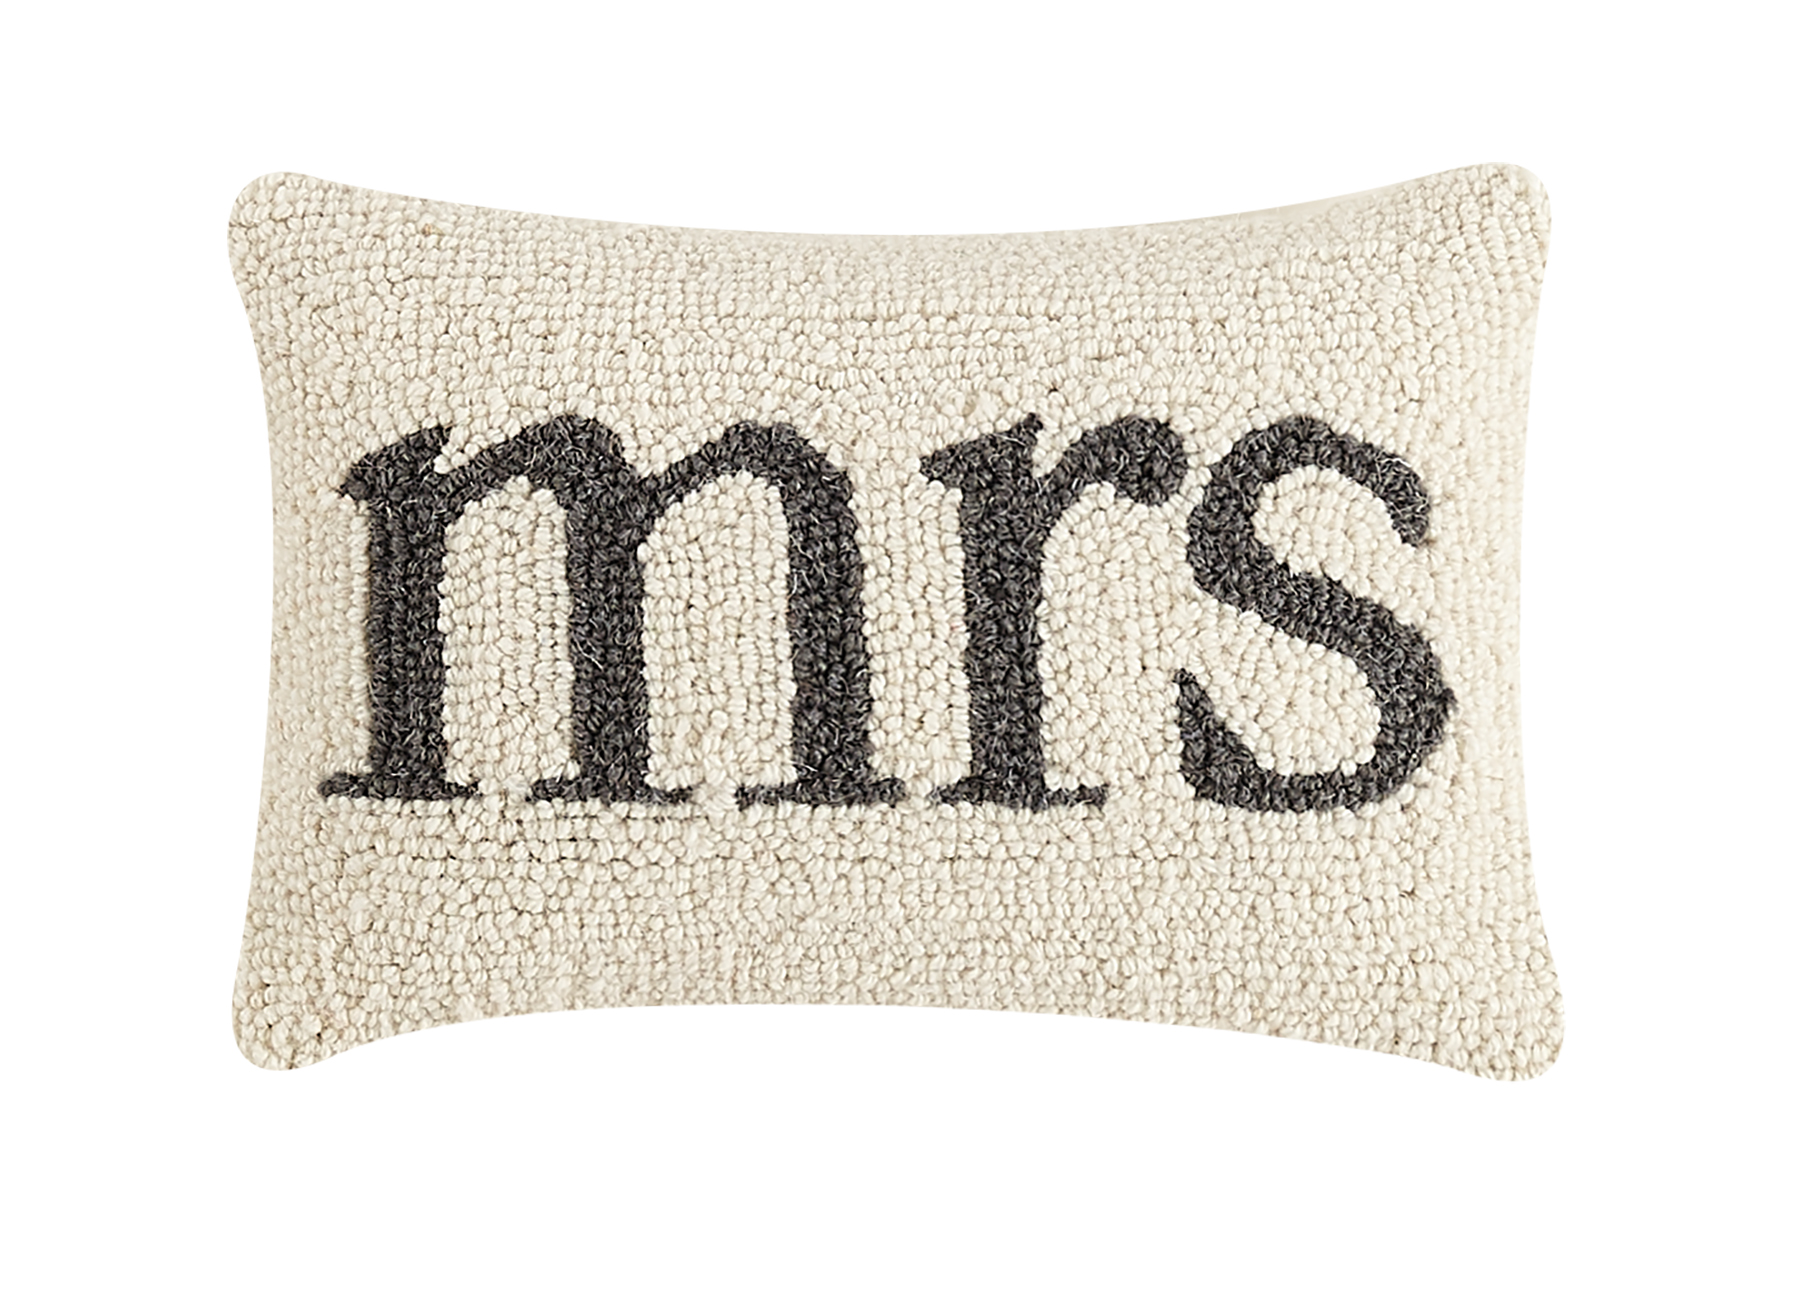 Mrs. Hook Pillow